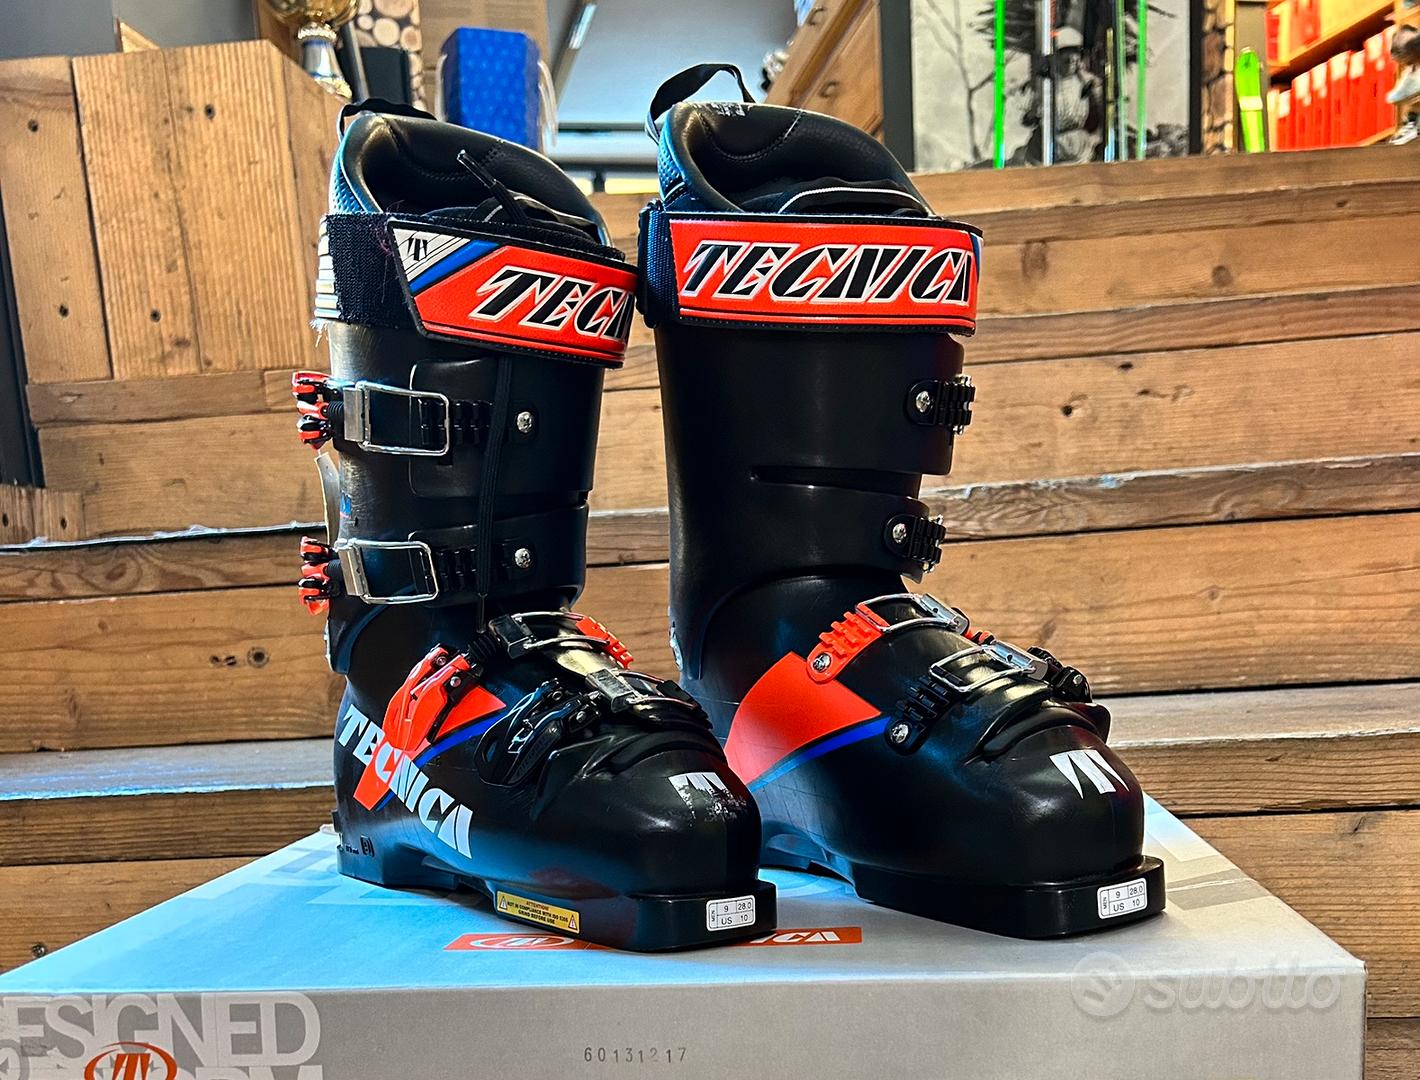 Tecnica R9.3 130 Ski Boots